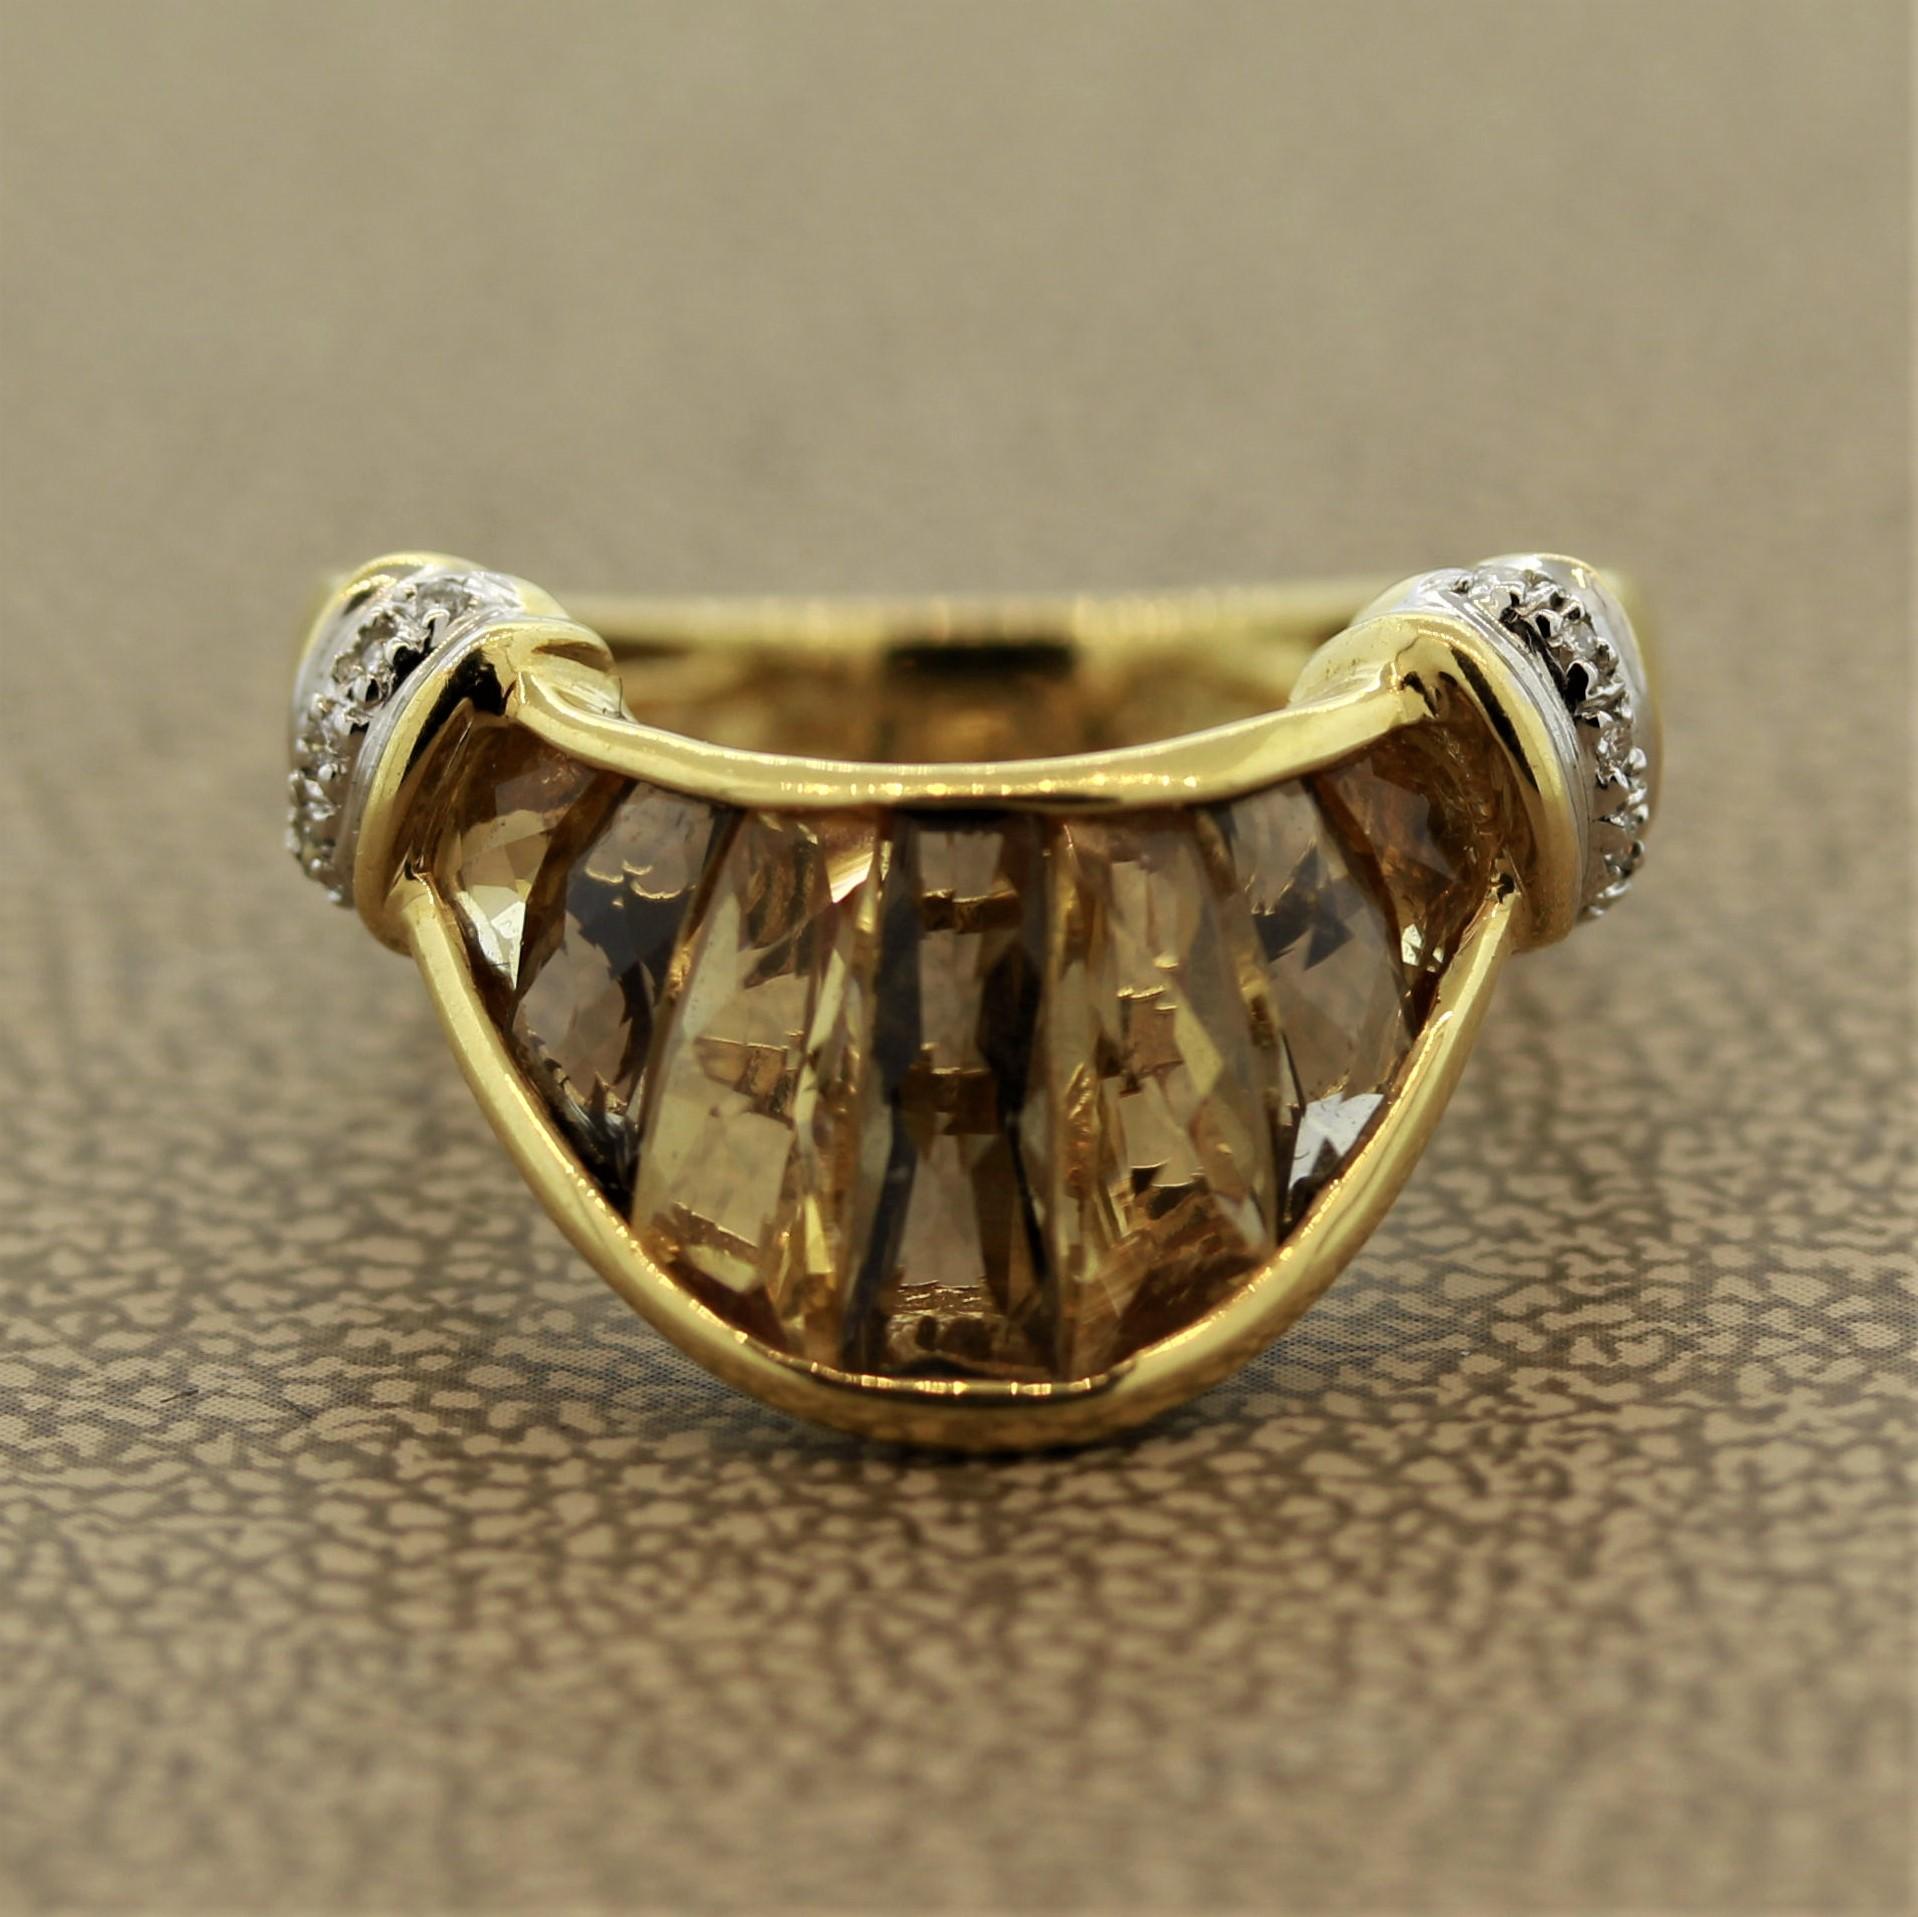 Der von Bellarri in Italien entworfene Ring besteht aus 2,16 Karat Rauchquarz und Citrin, die nacheinander in der Mitte des Rings gefasst sind. Die farbigen Steine werden von 0,05 Karat Diamanten im Rundschliff akzentuiert, die in 18 Karat Gelbgold